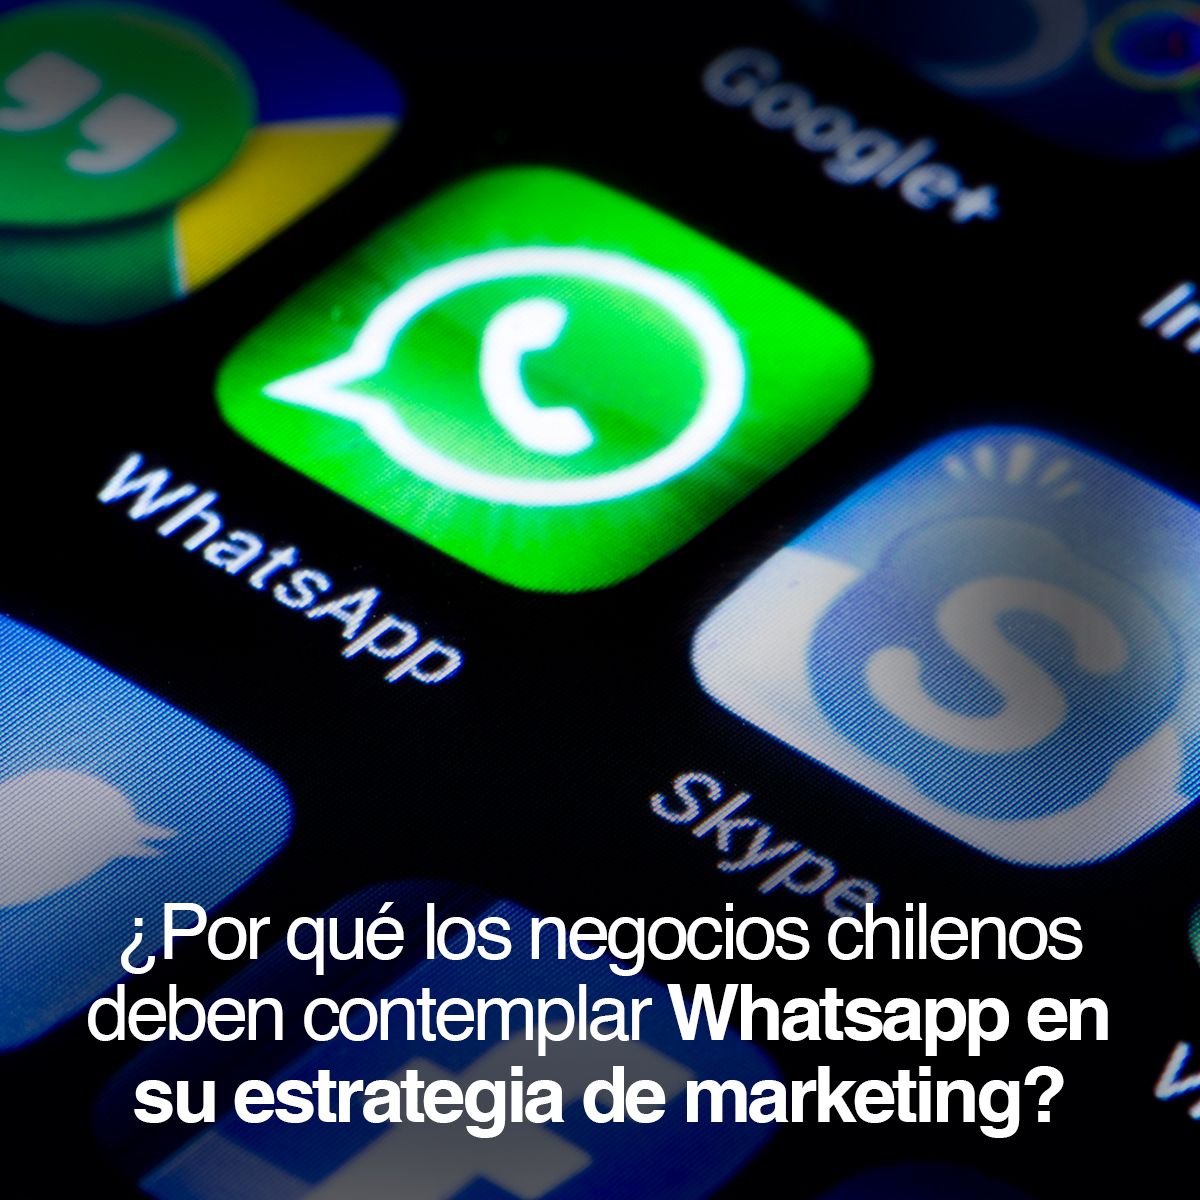 ¿Por qué los negocios chilenos deben contemplar Whatsapp en su estrategia de marketing?